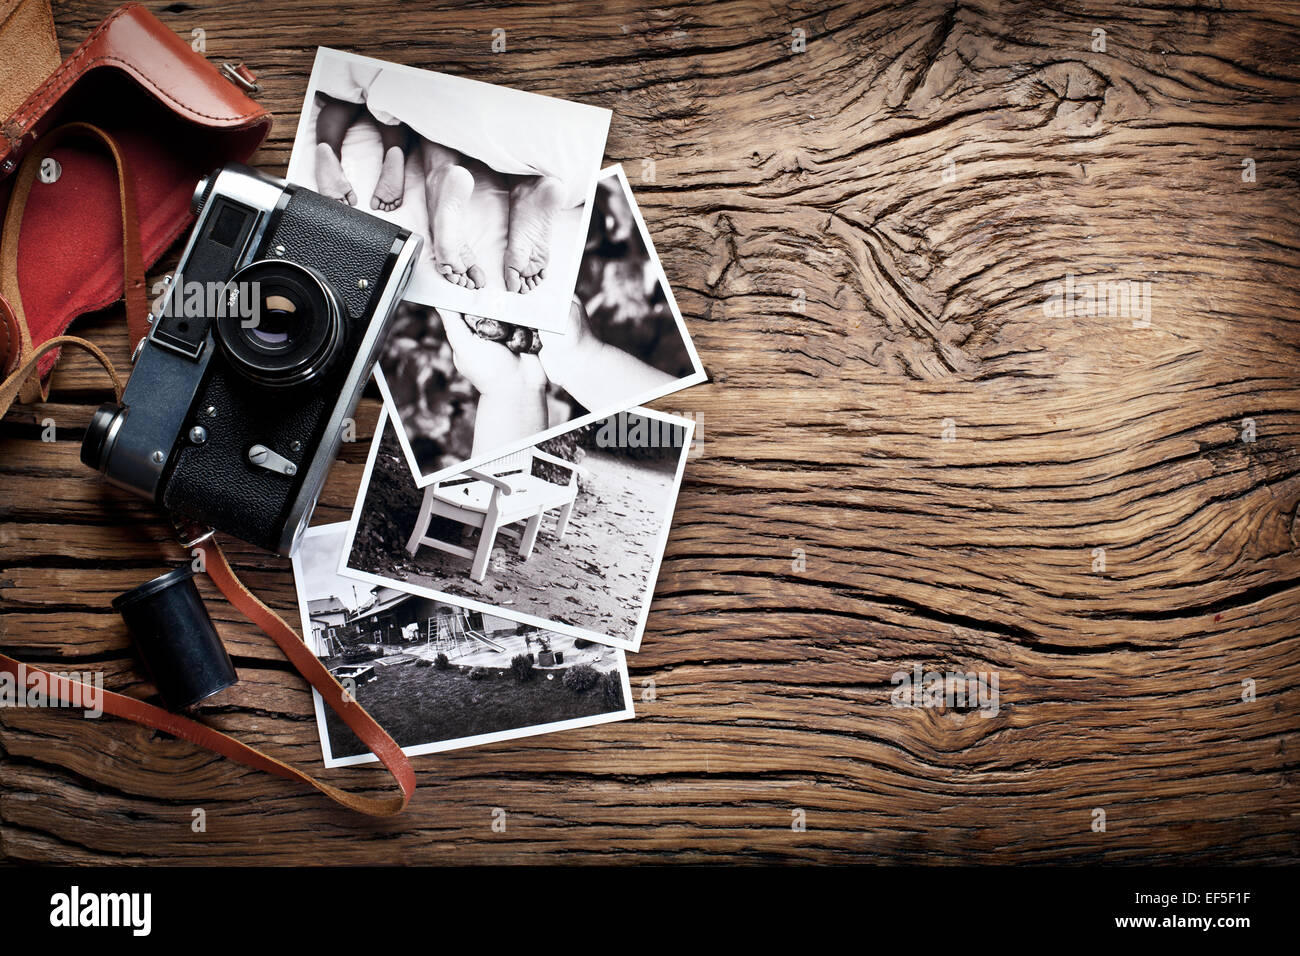 Telemetro vecchia fotocamera e foto in bianco e nero sul vecchio tavolo in legno. Foto Stock